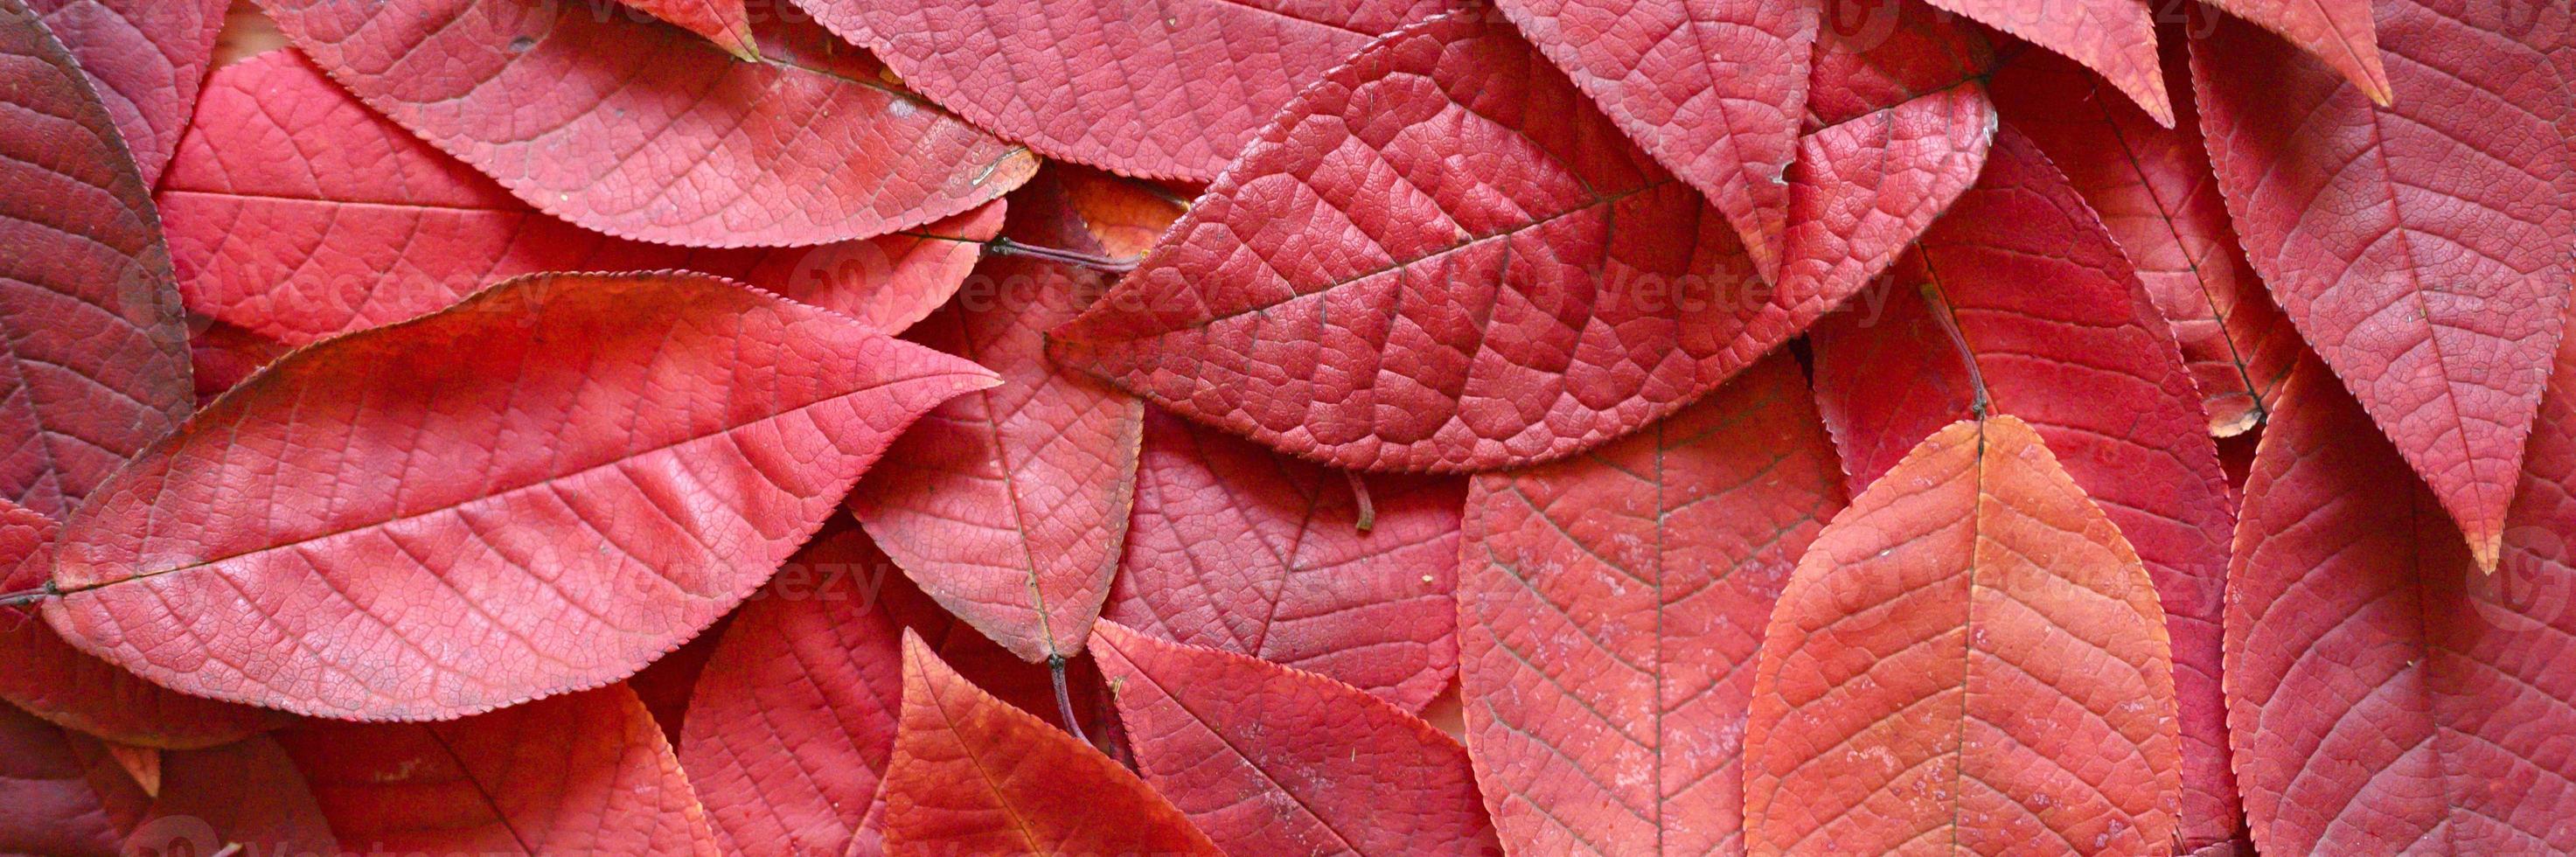 bakgrund av fallna höstens röda blad av ett körsbärsträd foto